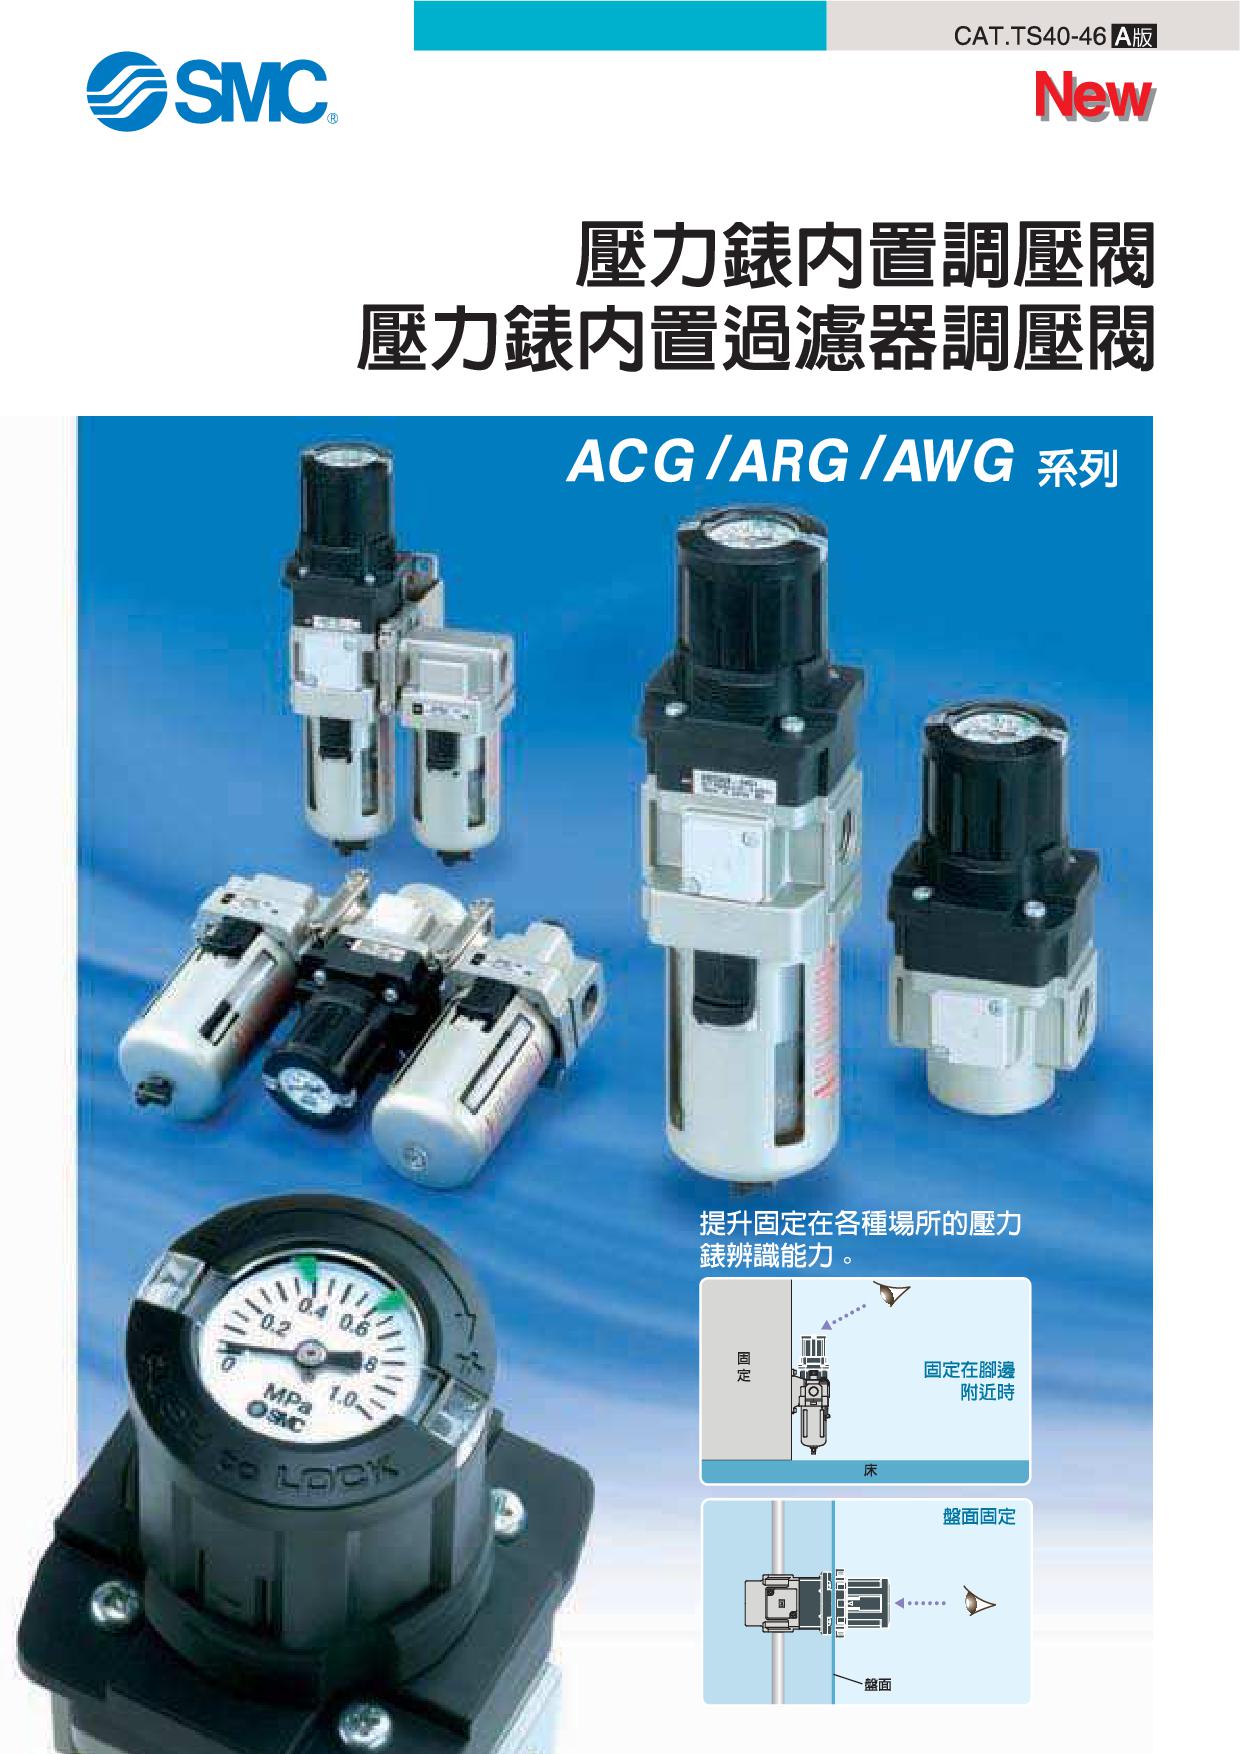 壓力錶內置調壓閥 ACG/ARG/AWG系列